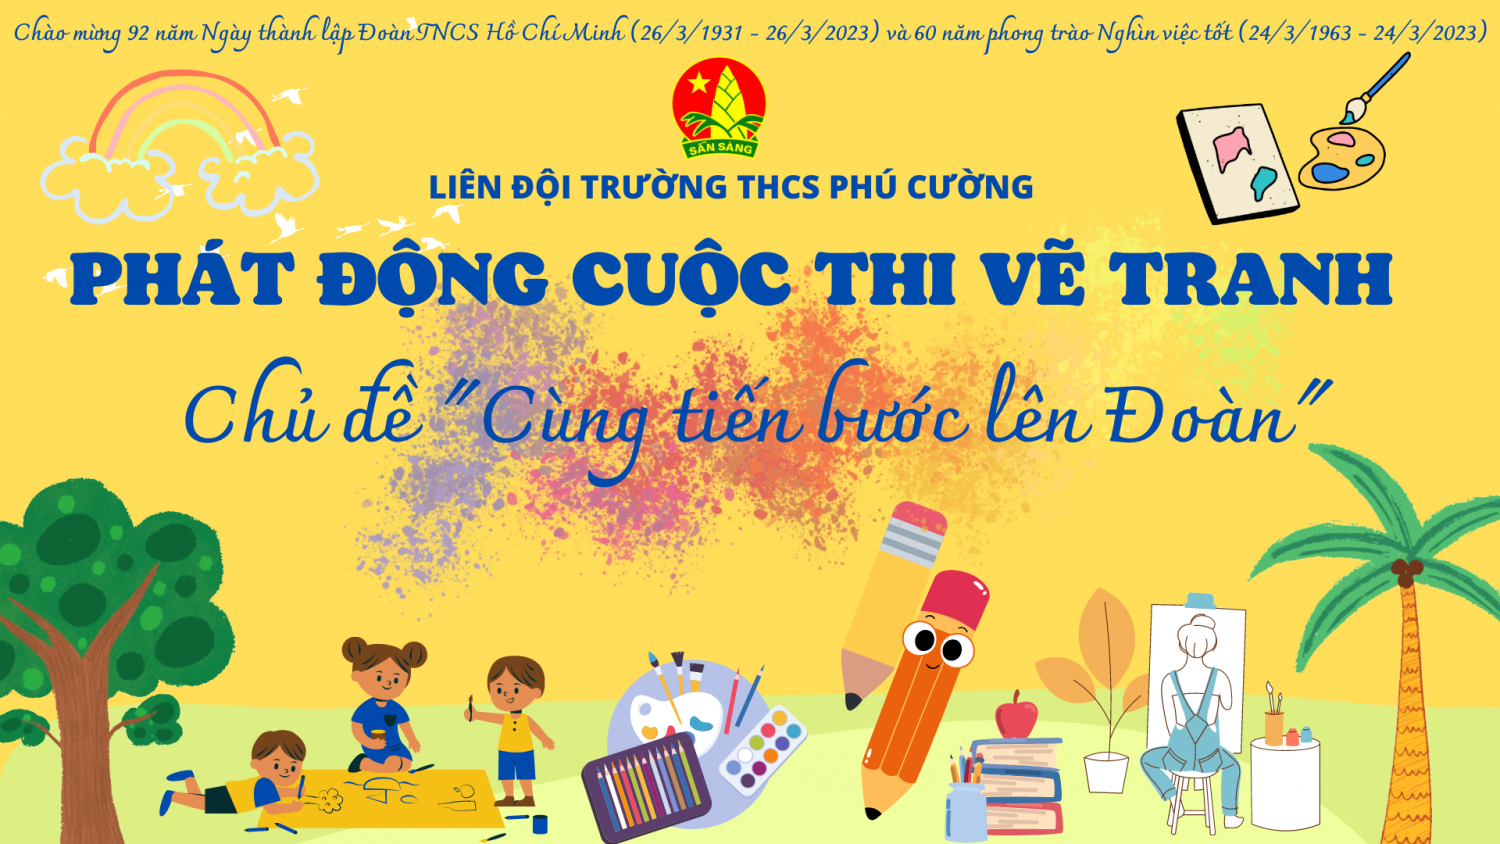 Liên đội trường THCS Phú Cường tổ chức cuộc thi vẽ tranh với chủ đề “Cùng tiến bước Lên Đoàn”